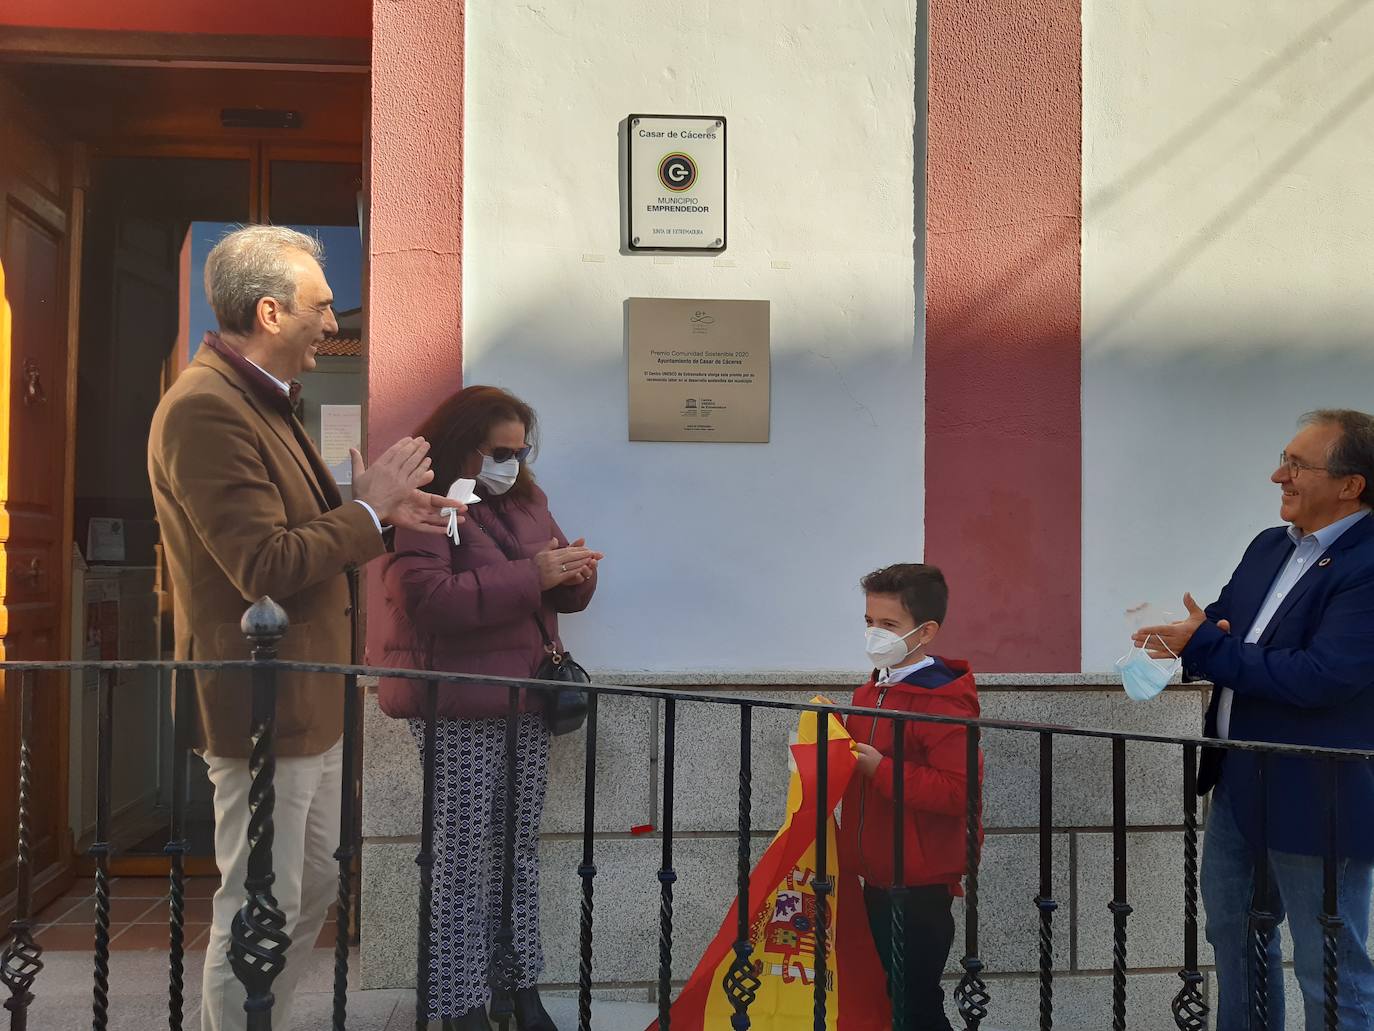 Casar de Cáceres descubre su placa del Premio Comunidad Sostenible